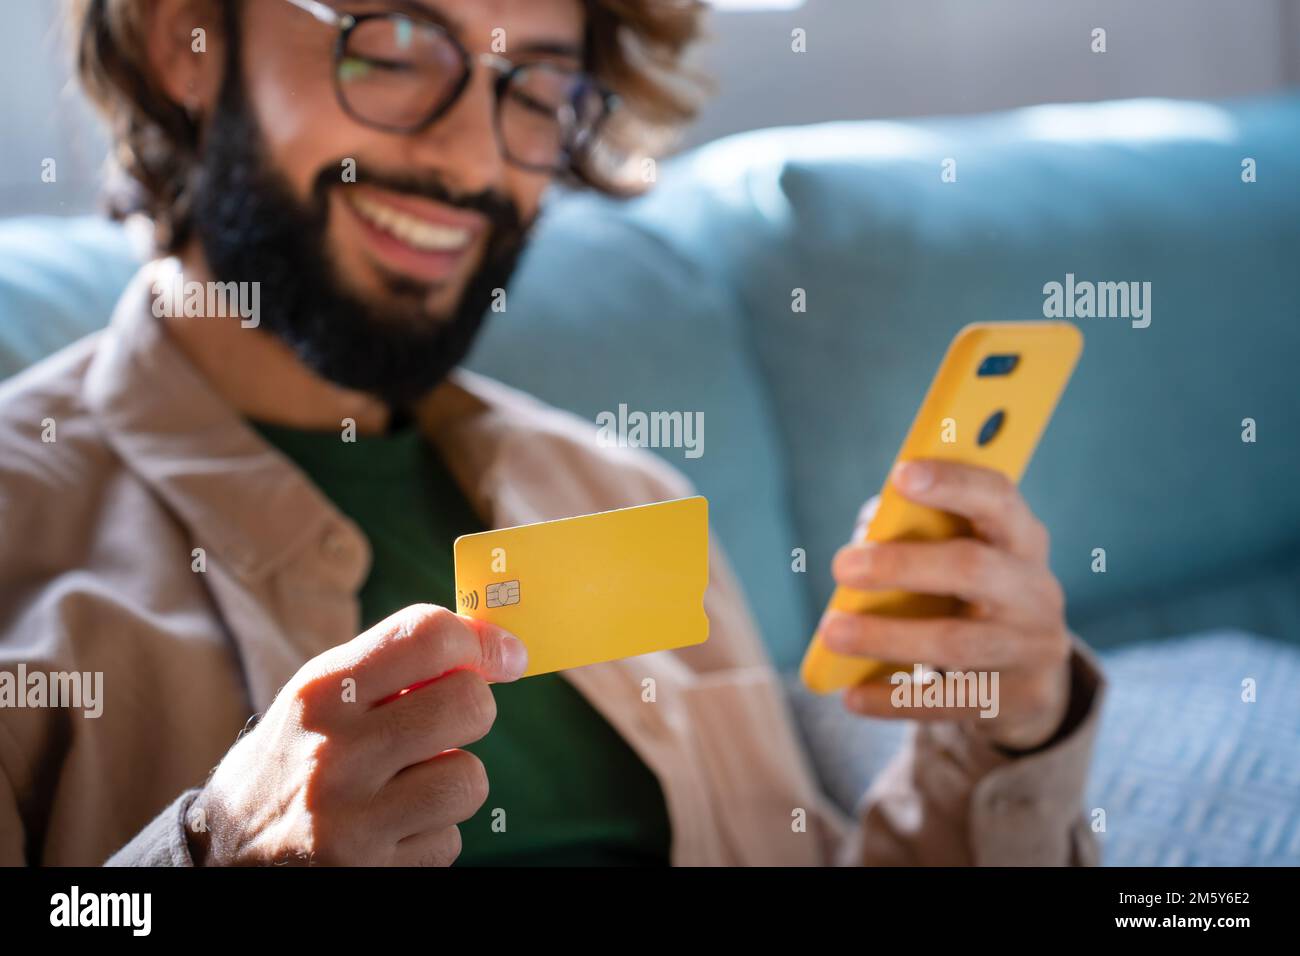 Glücklicher Kaukasier, der online einkauft, mit Smartphone und Kreditkarte einkauft, im Internet einkauft Stockfoto